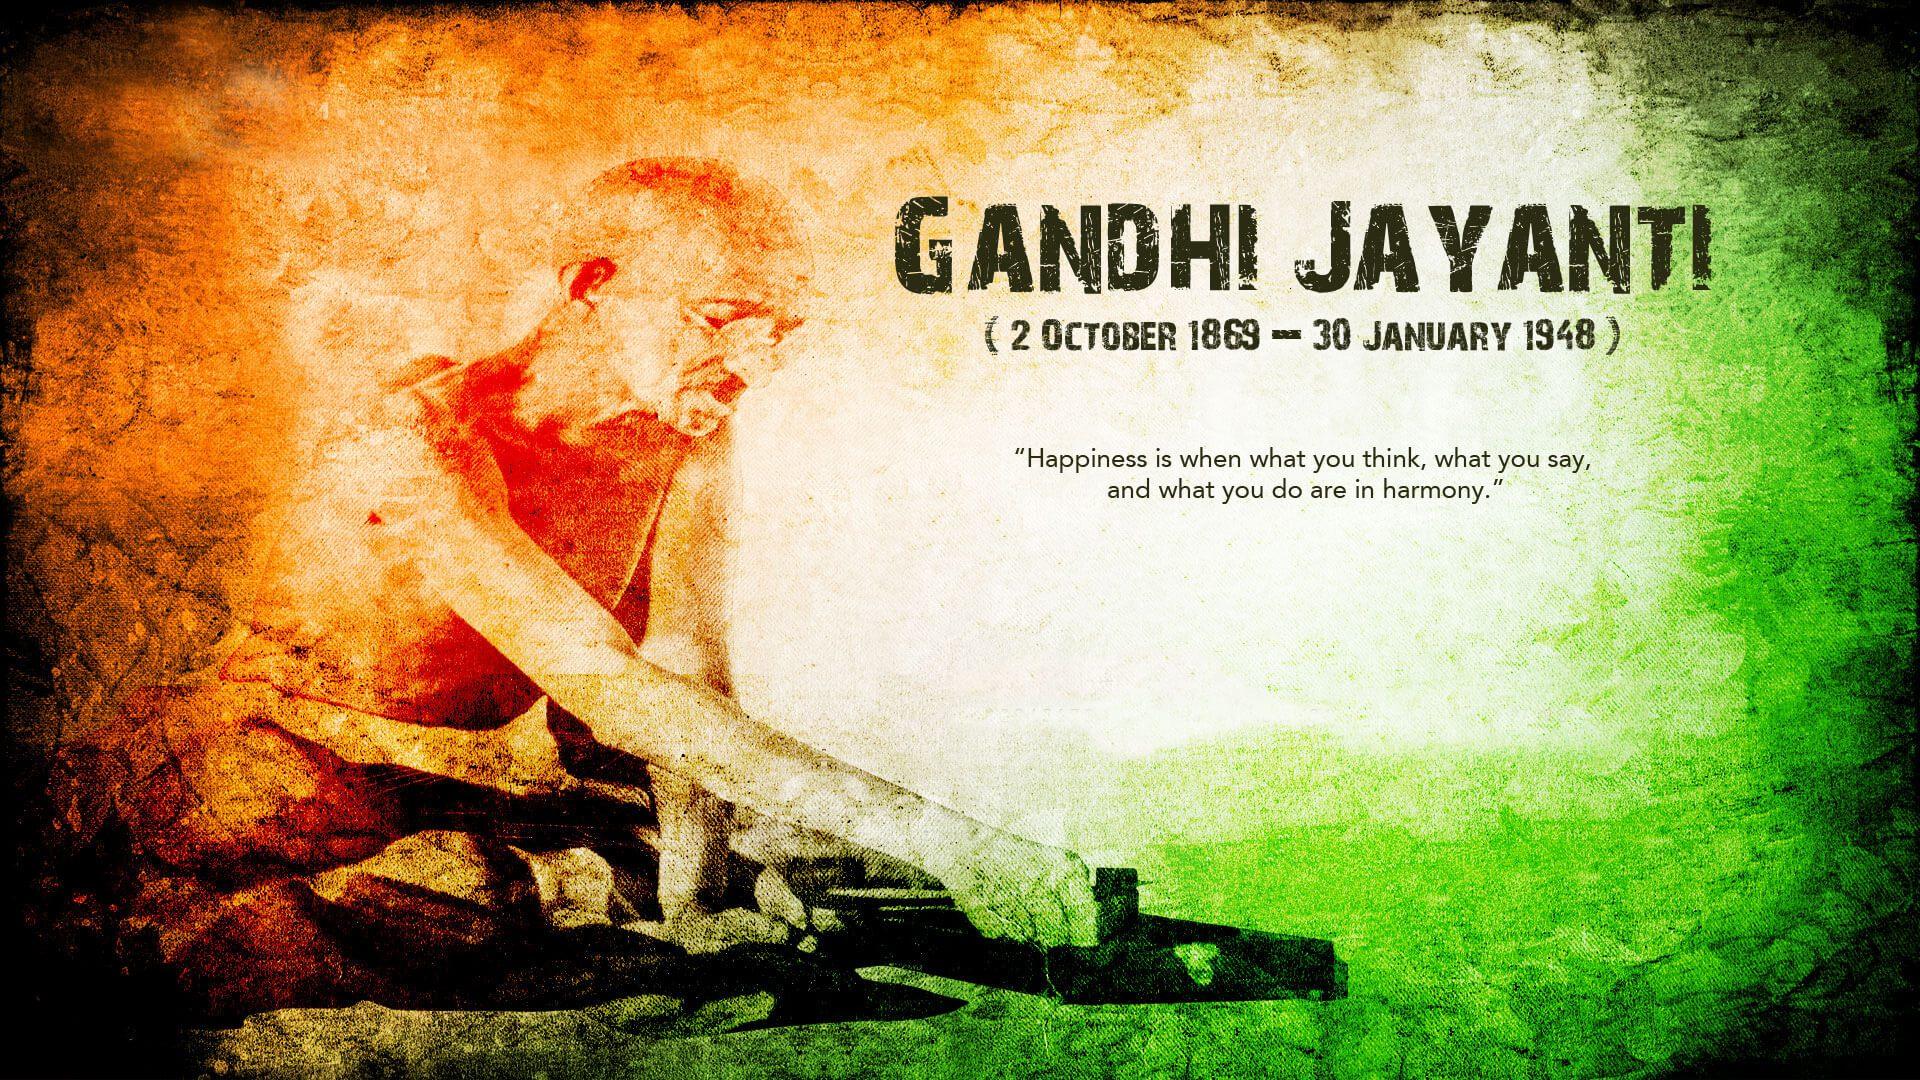 Gandhi Jayanti Wallpapers Wallpaper Cave 6105